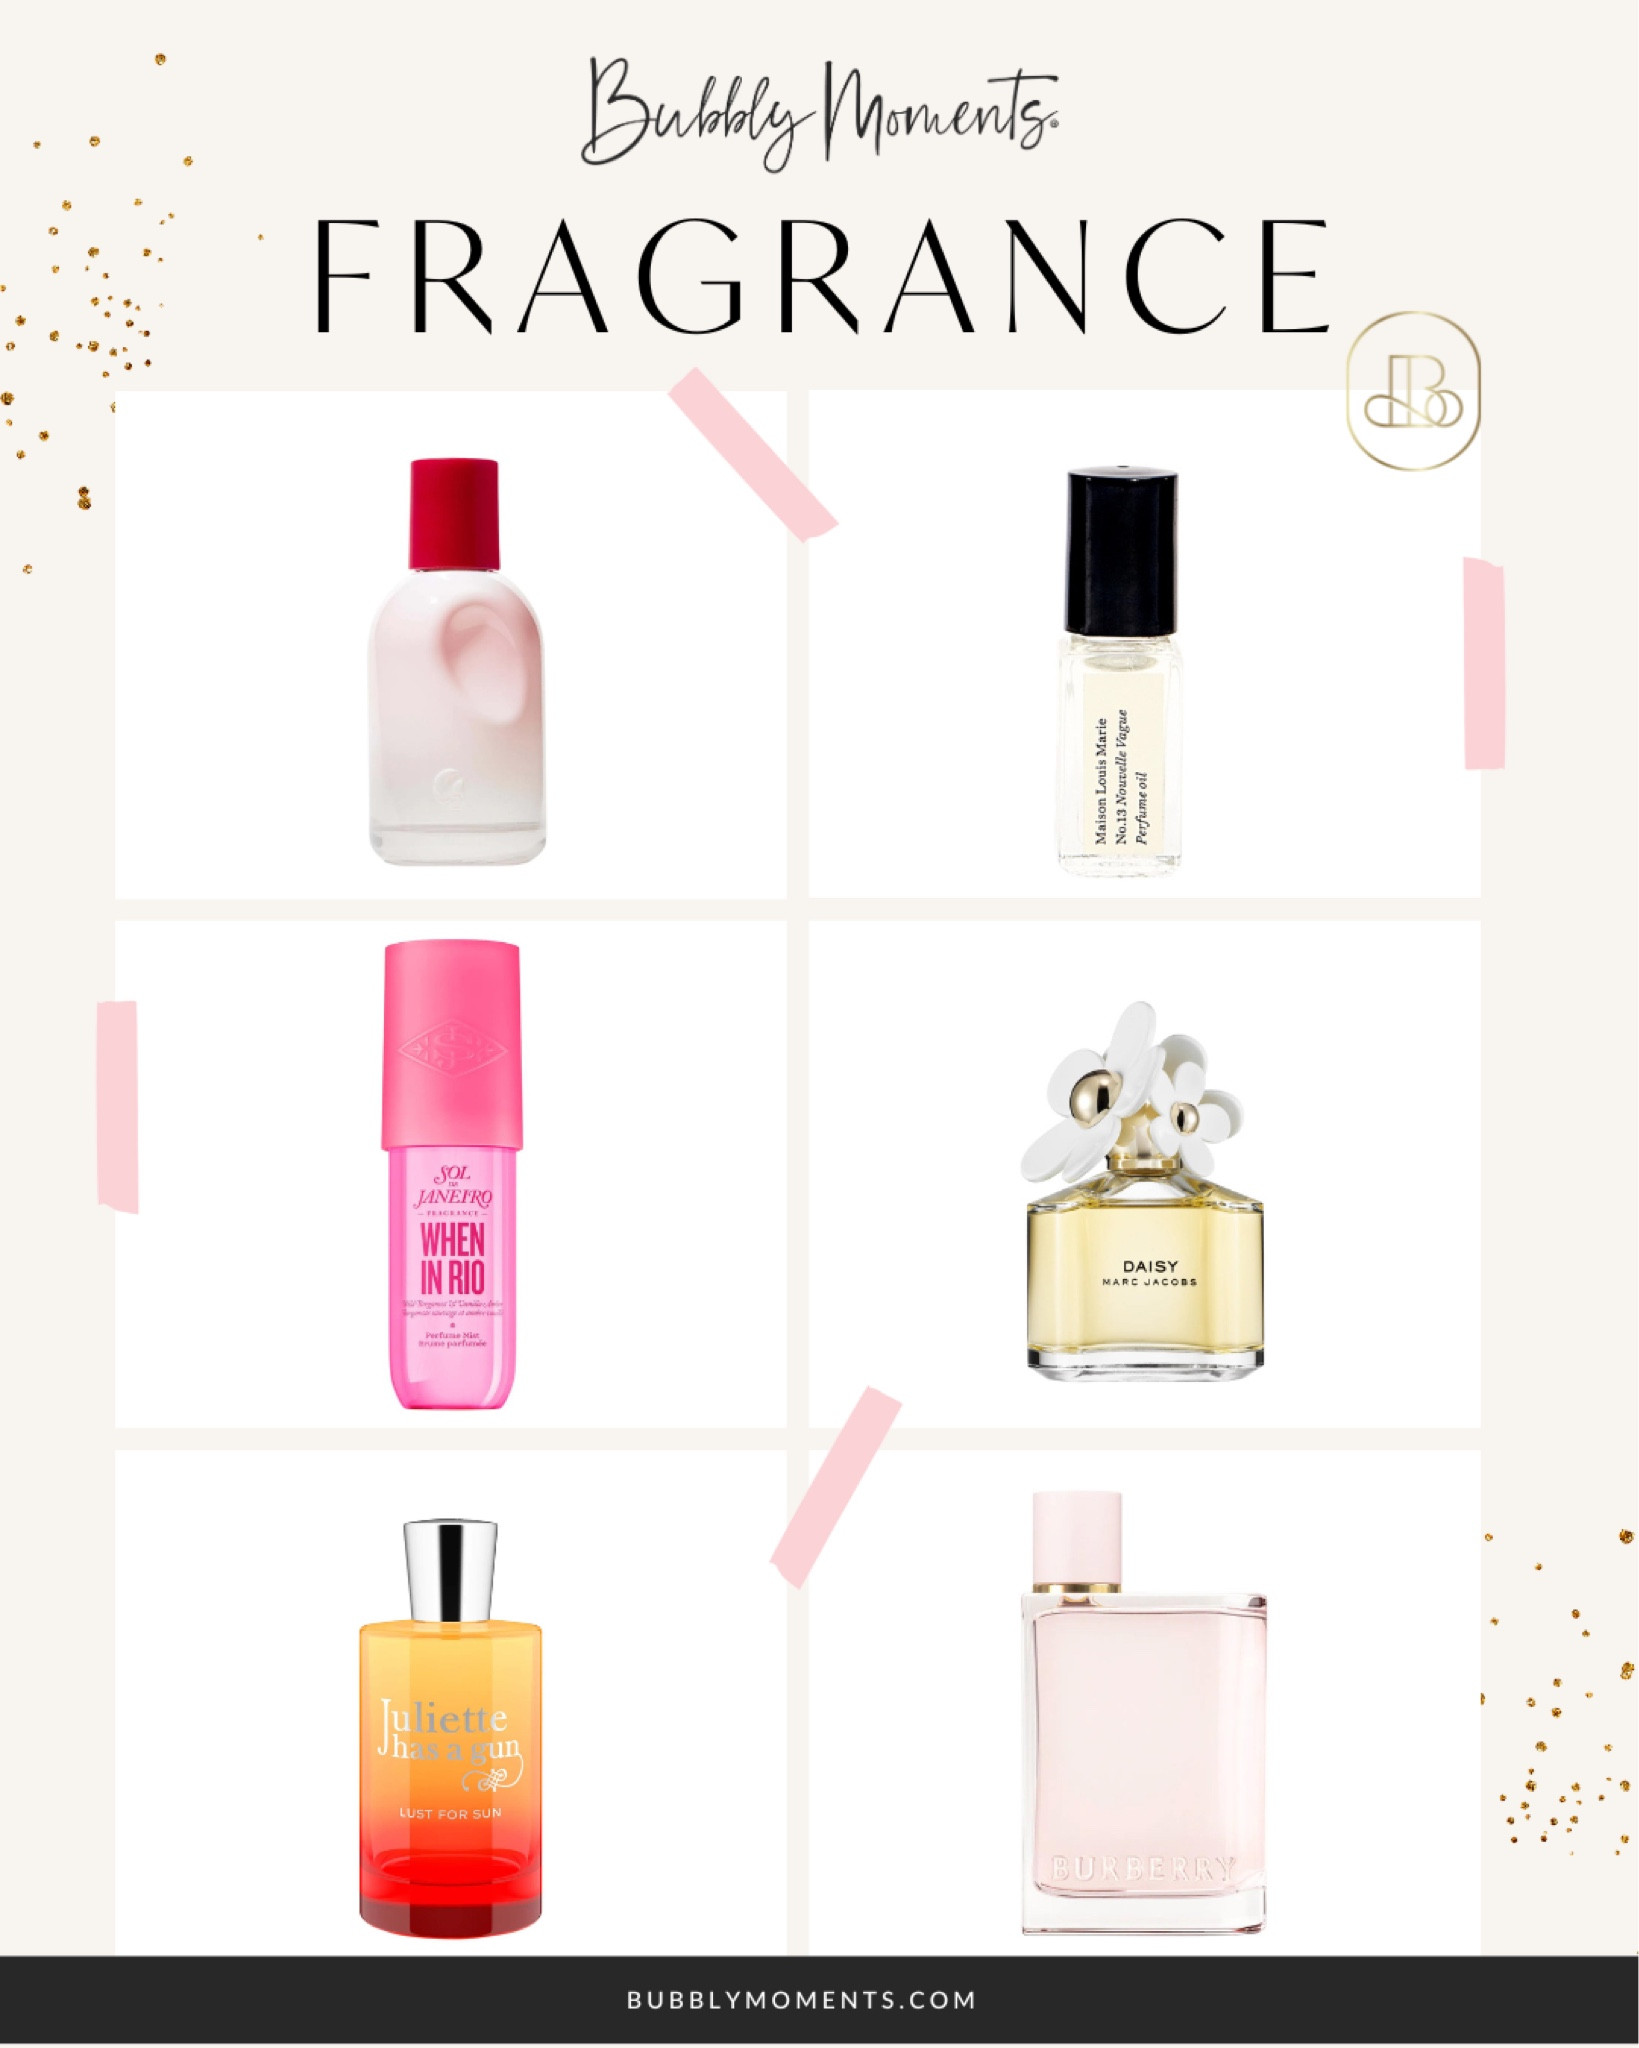 Mini Perfume Oil (No.13 Nouvelle Vague)